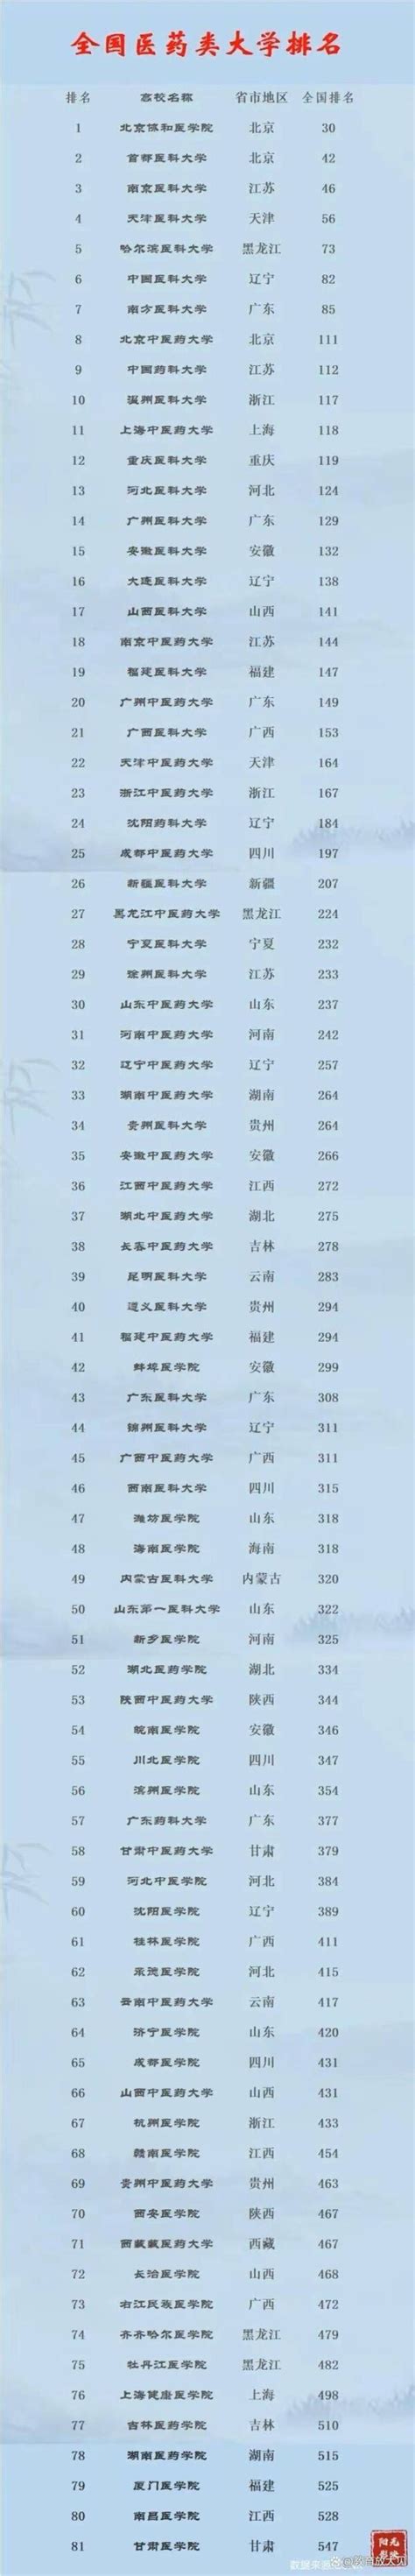 中国医科大学100强排名(医科大学全国排名一览表)-木子李育儿网